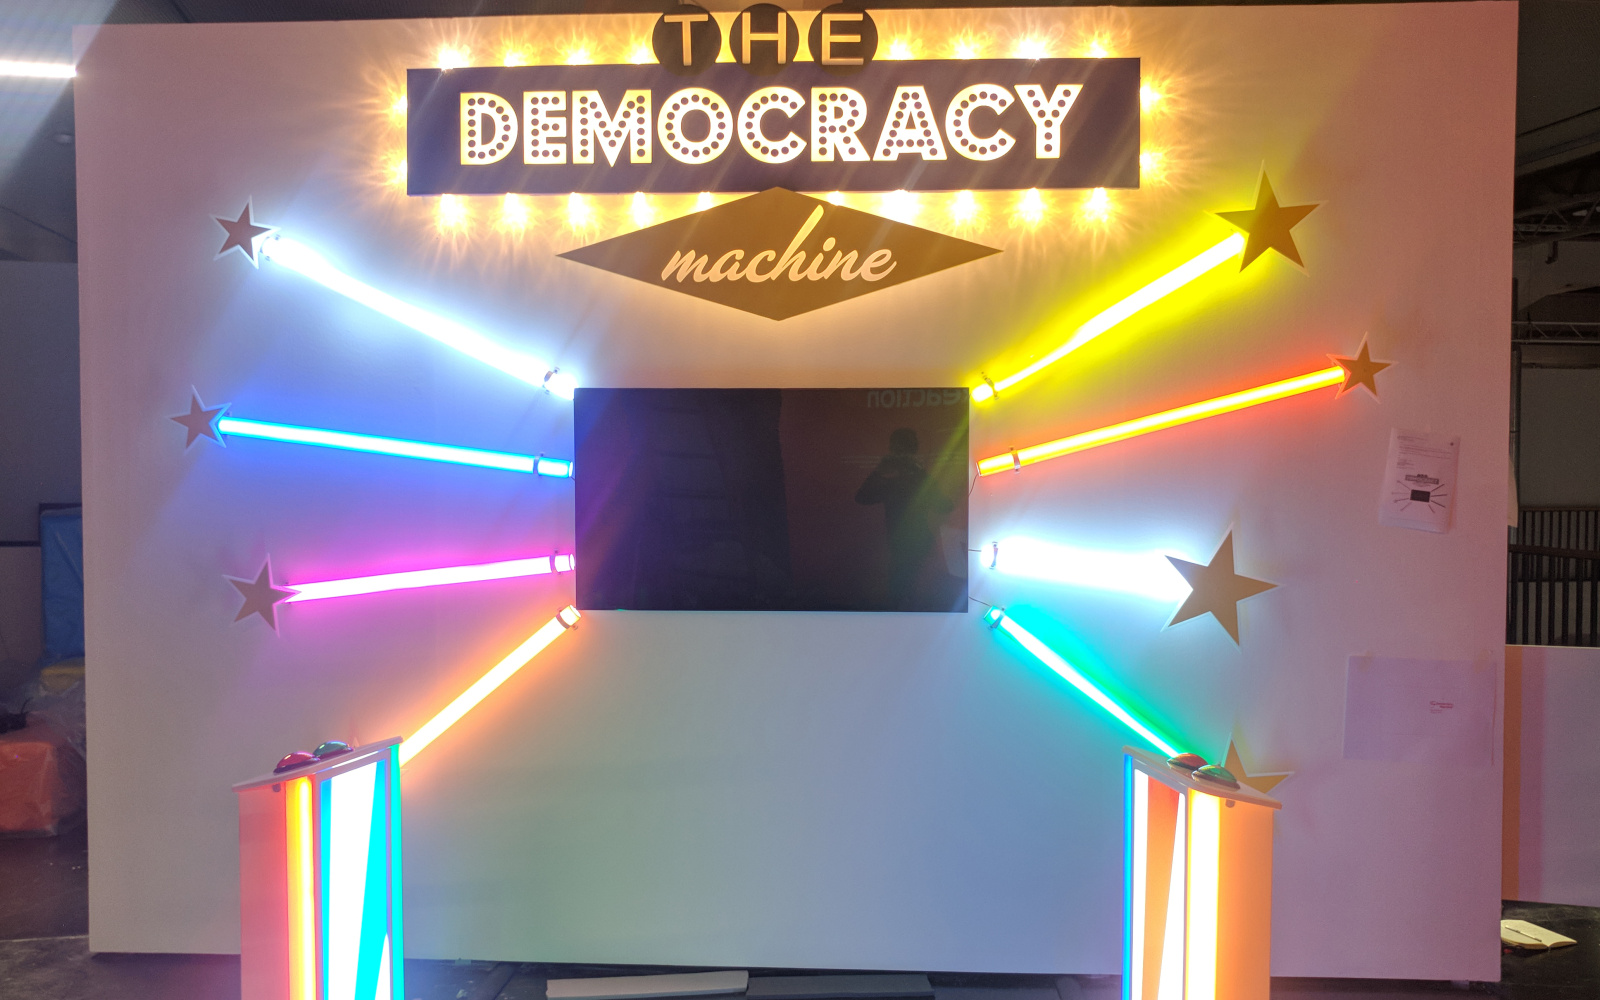 Frontalansicht der The Democracy Machine!. In der Mitte einer Wand ist ein Fernseher installiert darum herum sind je drei bunte Farbröhren wie Sonnenstrahlen angeordnet. Davor stehen zwei Podeste mit Knöpfen.